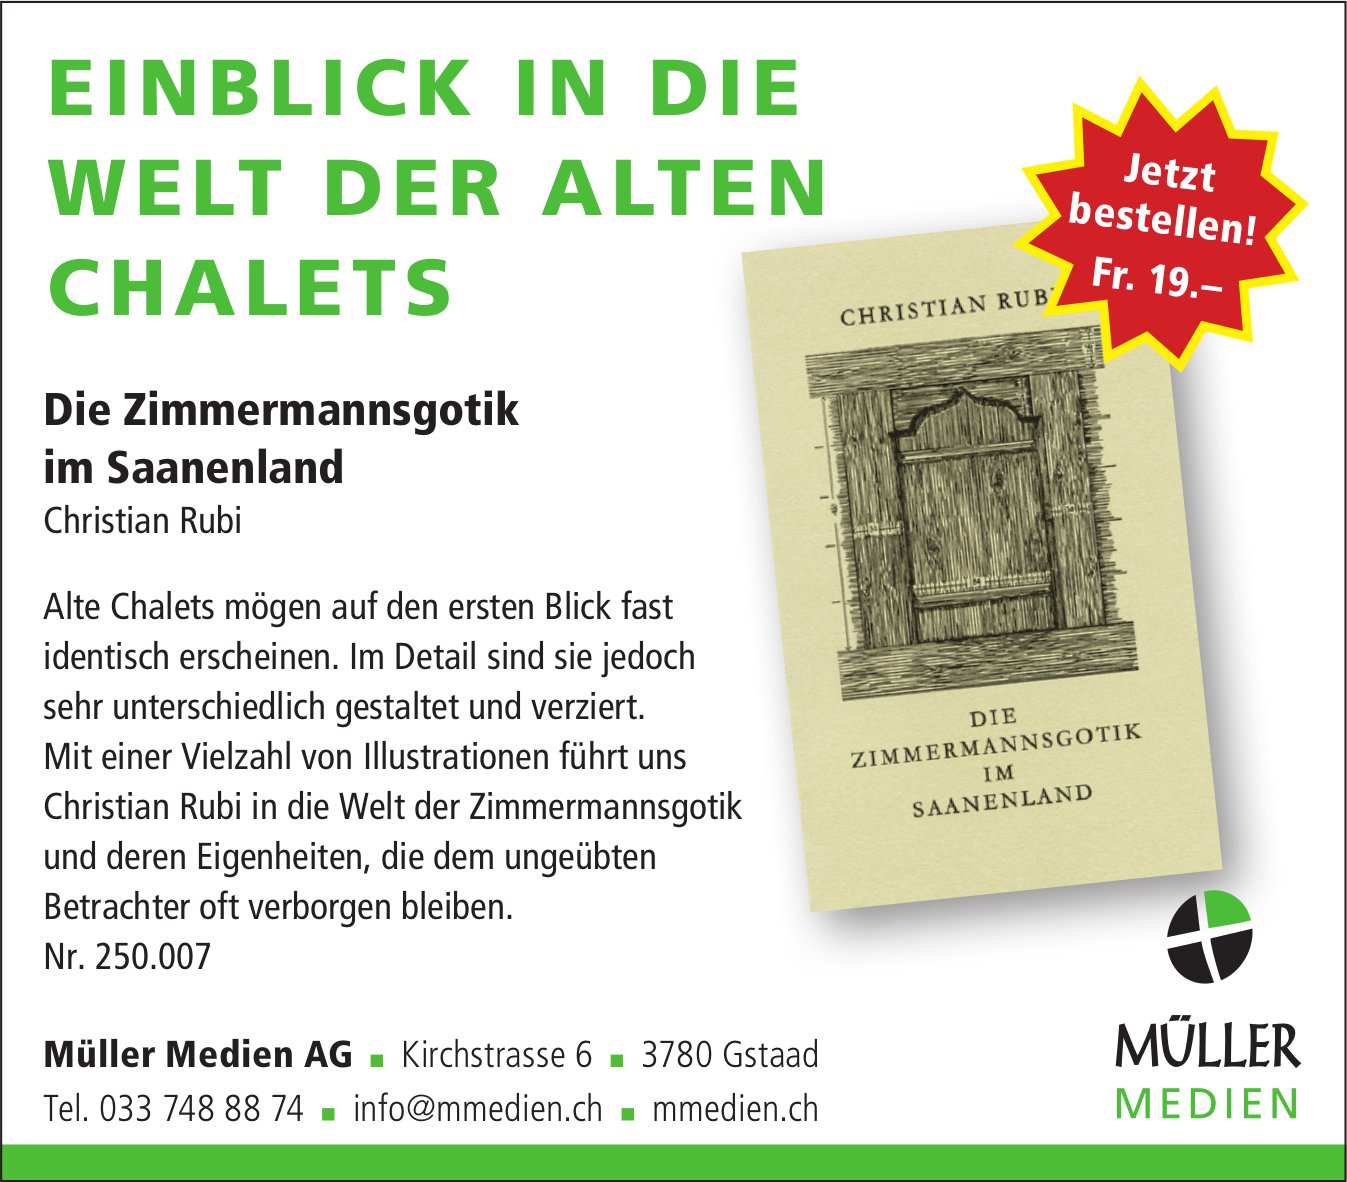 Müller Medien AG, Gstaad - Einblick in die Welt der alten Chalets - Die Zimmermannsgotik im Saanenland